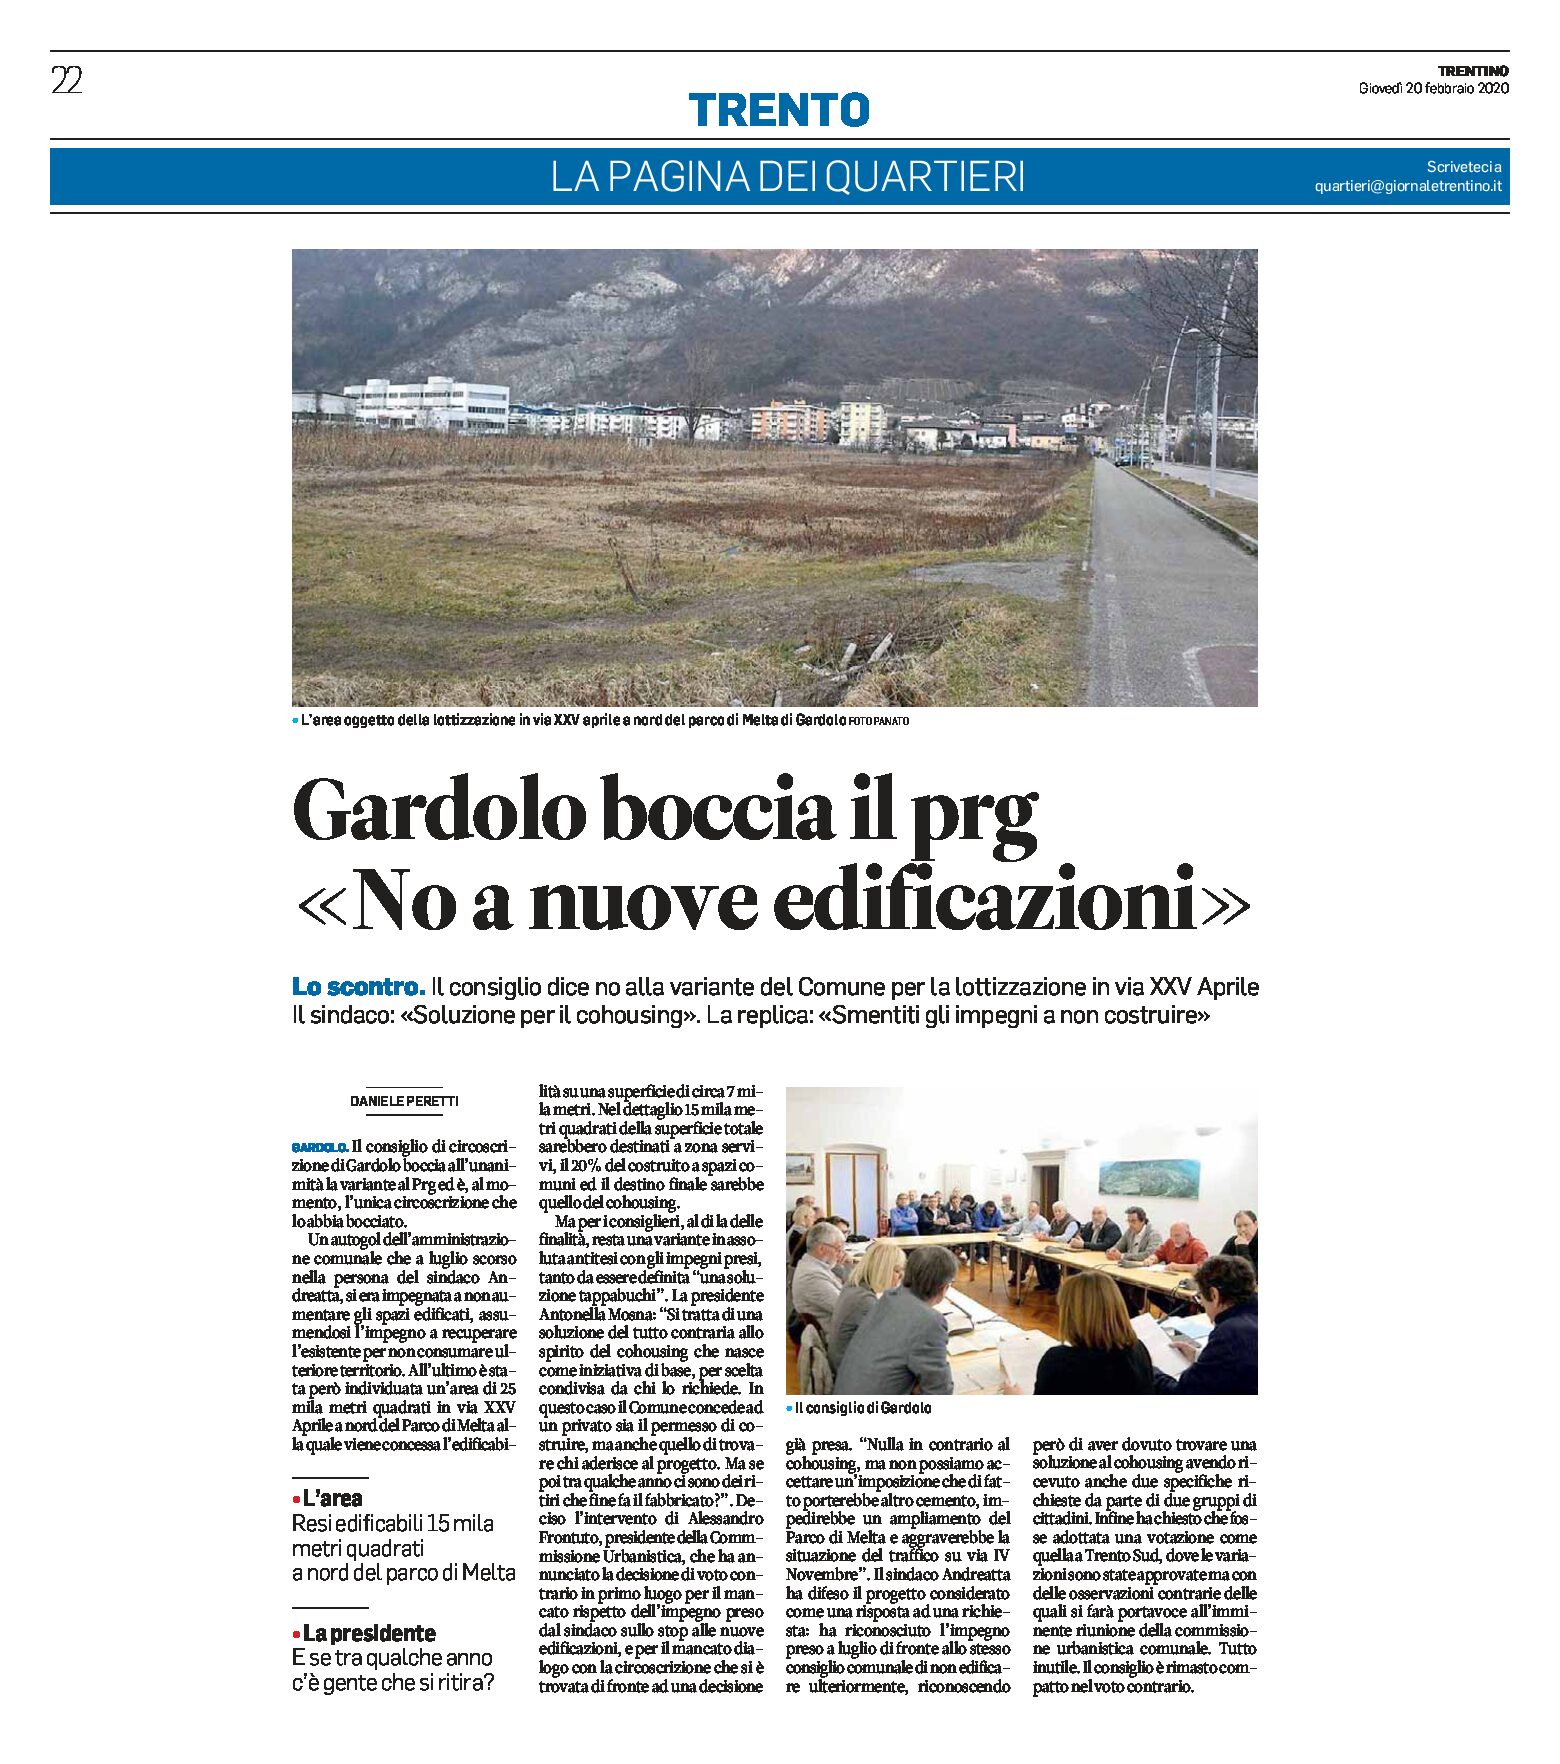 Trento: Gardolo boccia il Prg “no a nuove edificazioni”